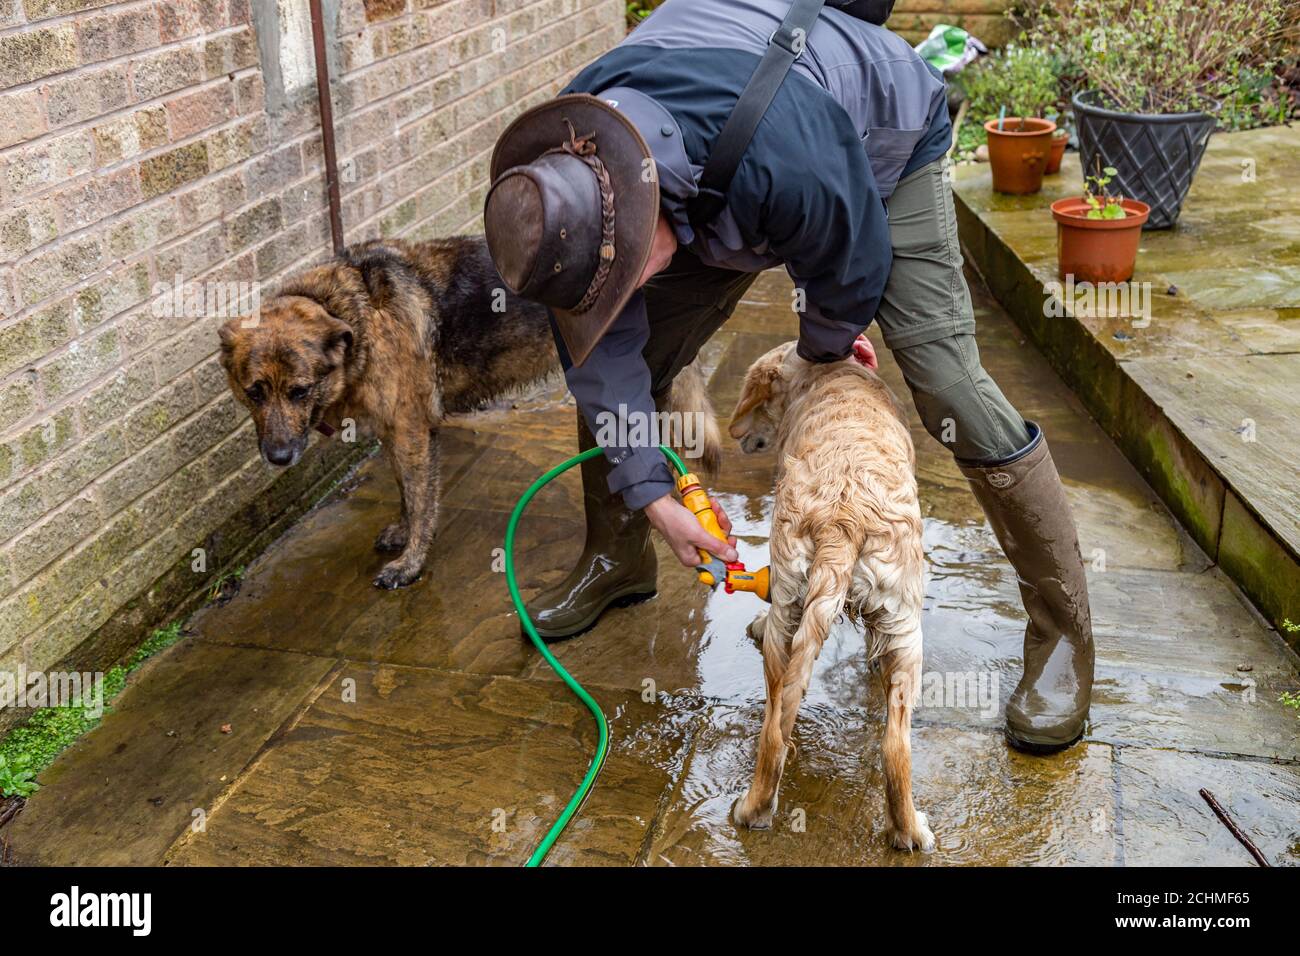 Ein Hundebesitzer schürt seine schlammigen Hunde nach einem Spaziergang herunter. Stockfoto